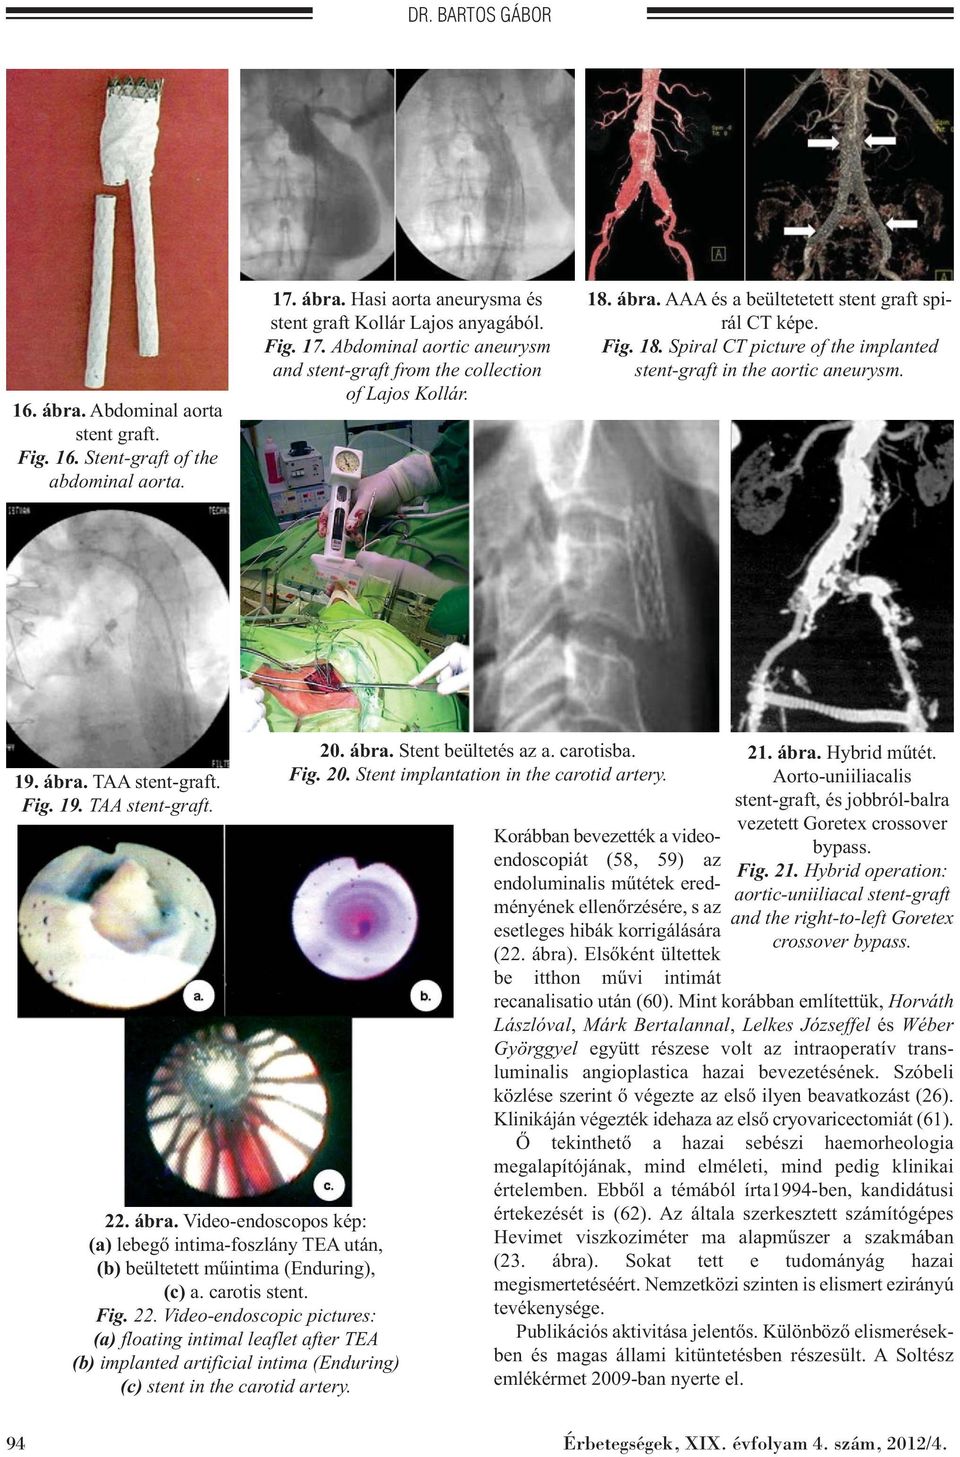 ábra. Video-endoscopos kép: (a) lebegő intima-foszlány TEA után, (b) beültetett műintima (Enduring), (c) a. carotis stent. Fig. 22.